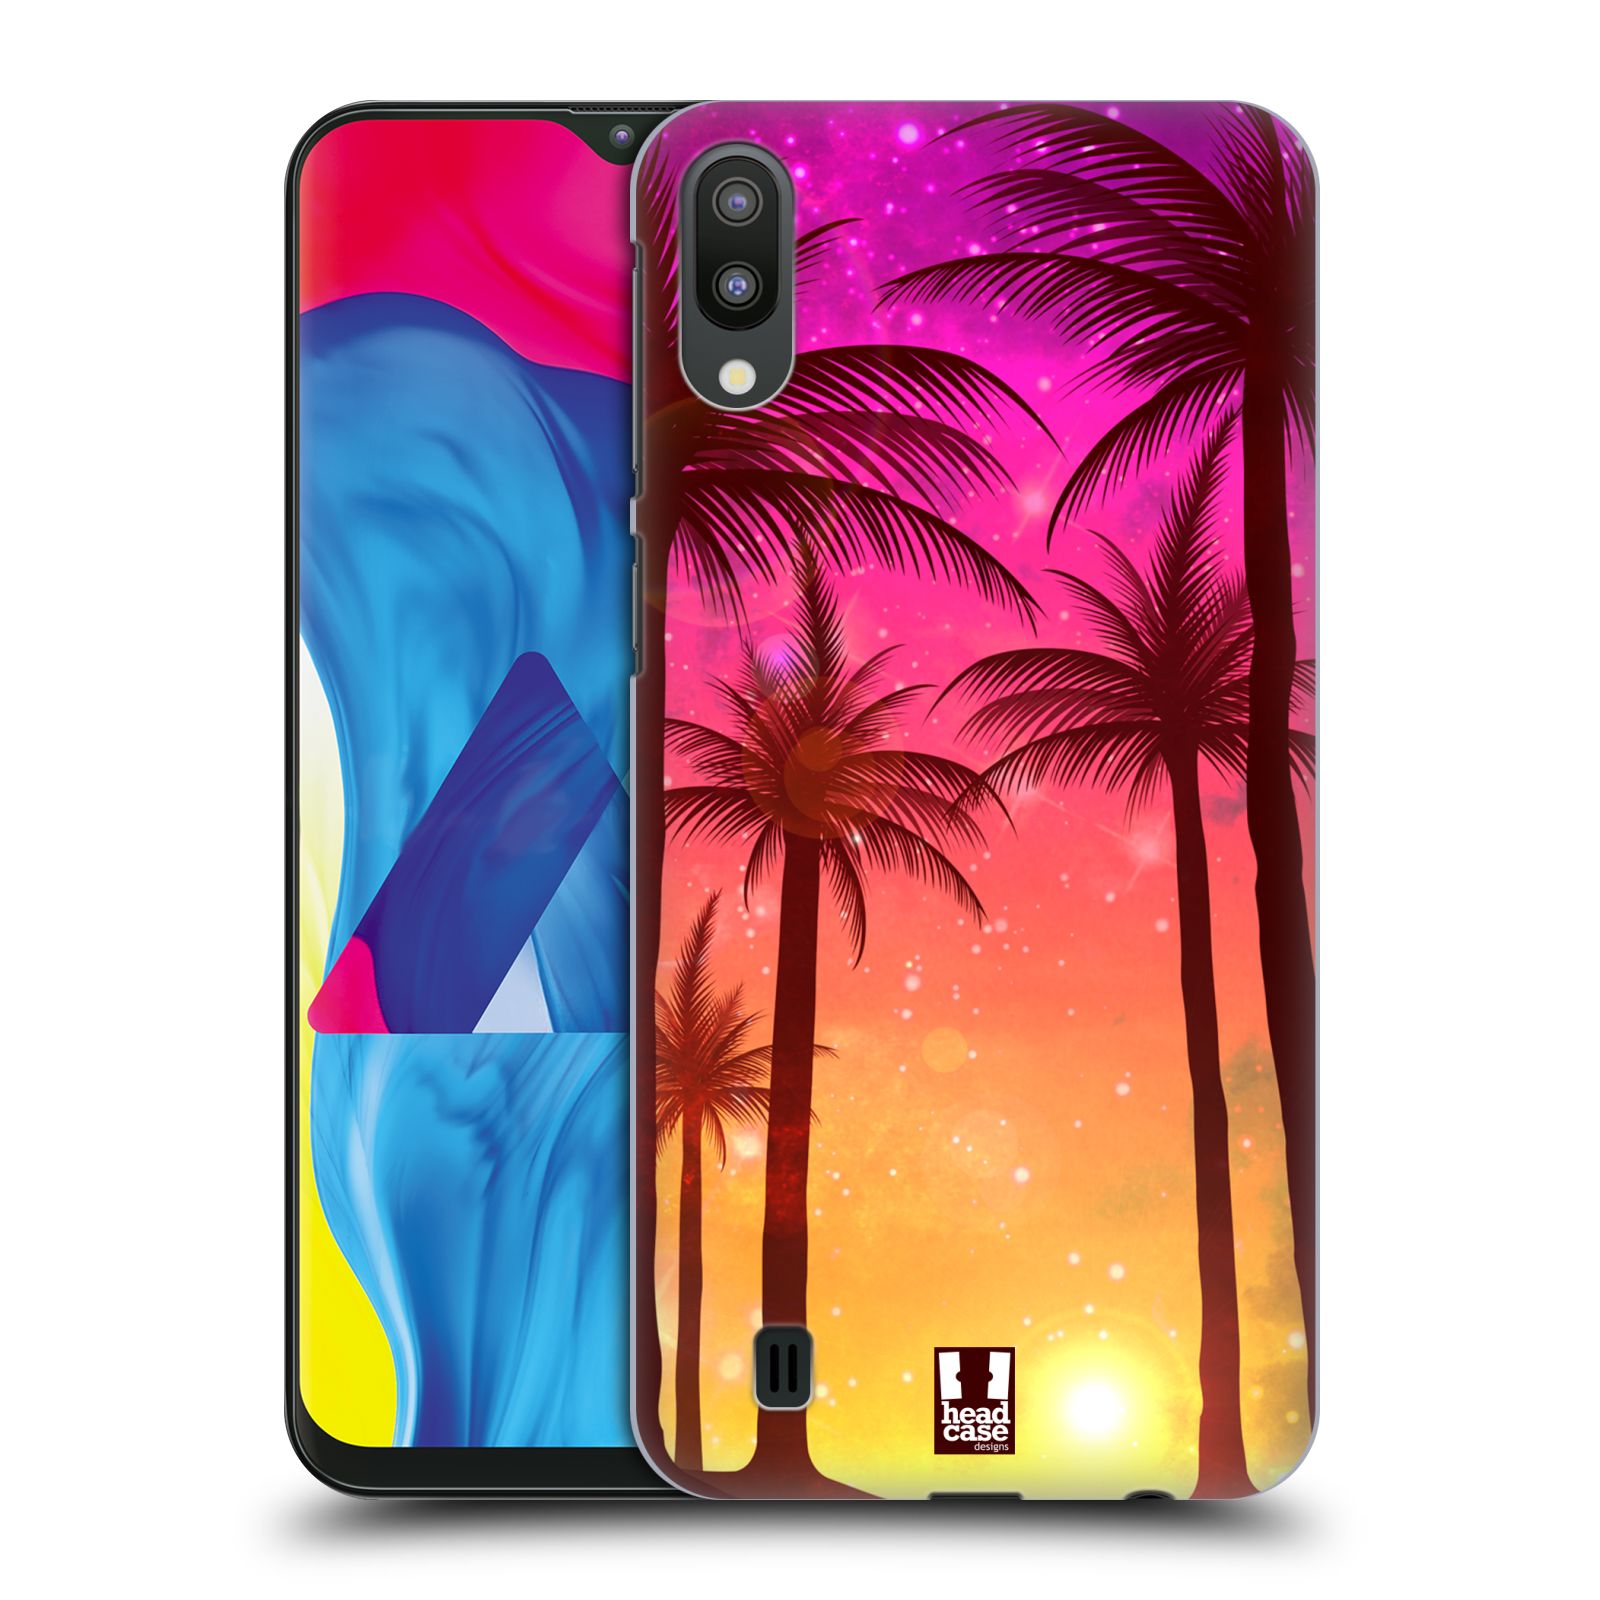 Plastový obal HEAD CASE na mobil Samsung Galaxy M10 vzor Kreslený motiv silueta moře a palmy RŮŽOVÁ